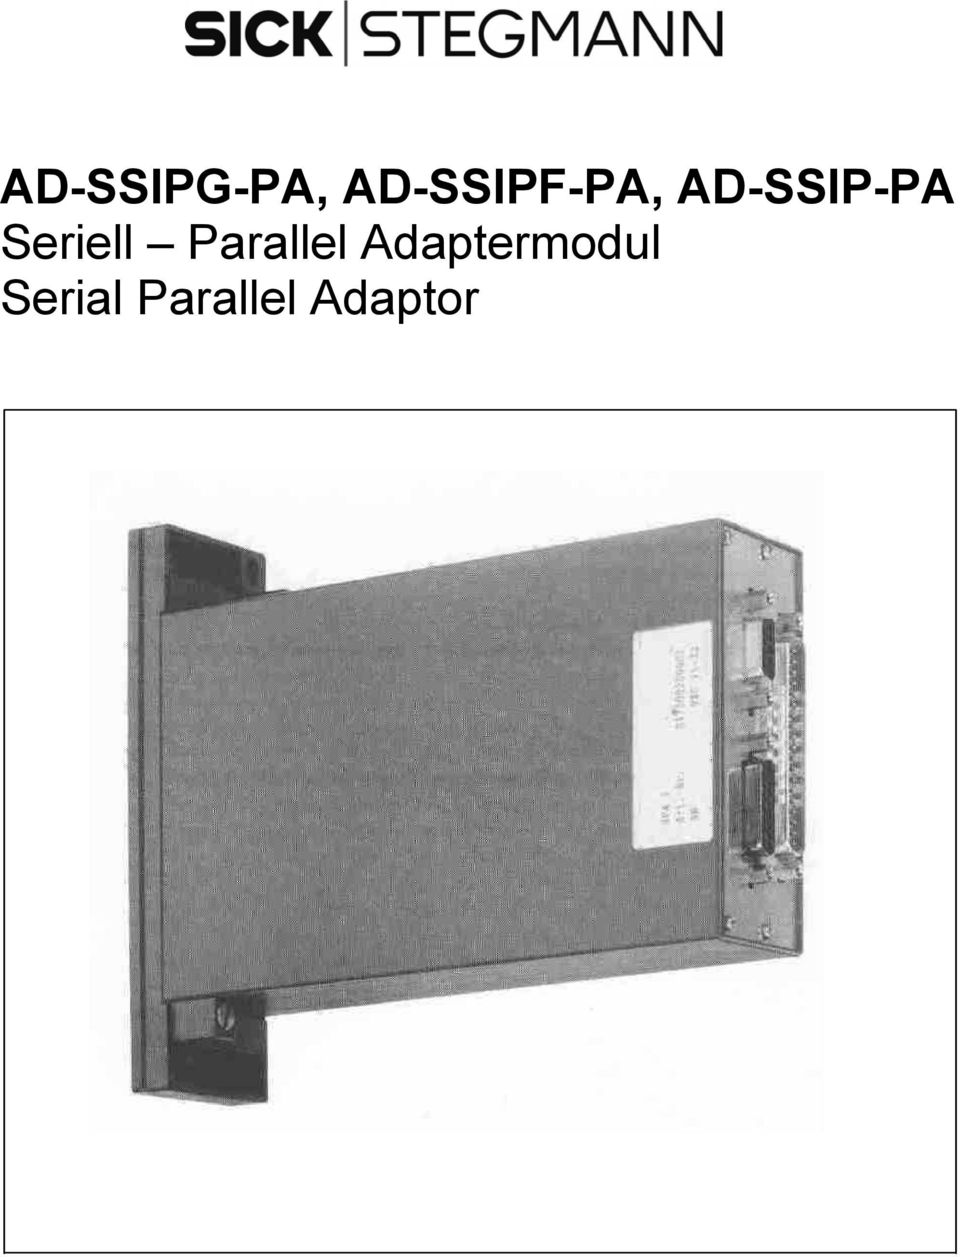 AD-SSIP-PA Seriell